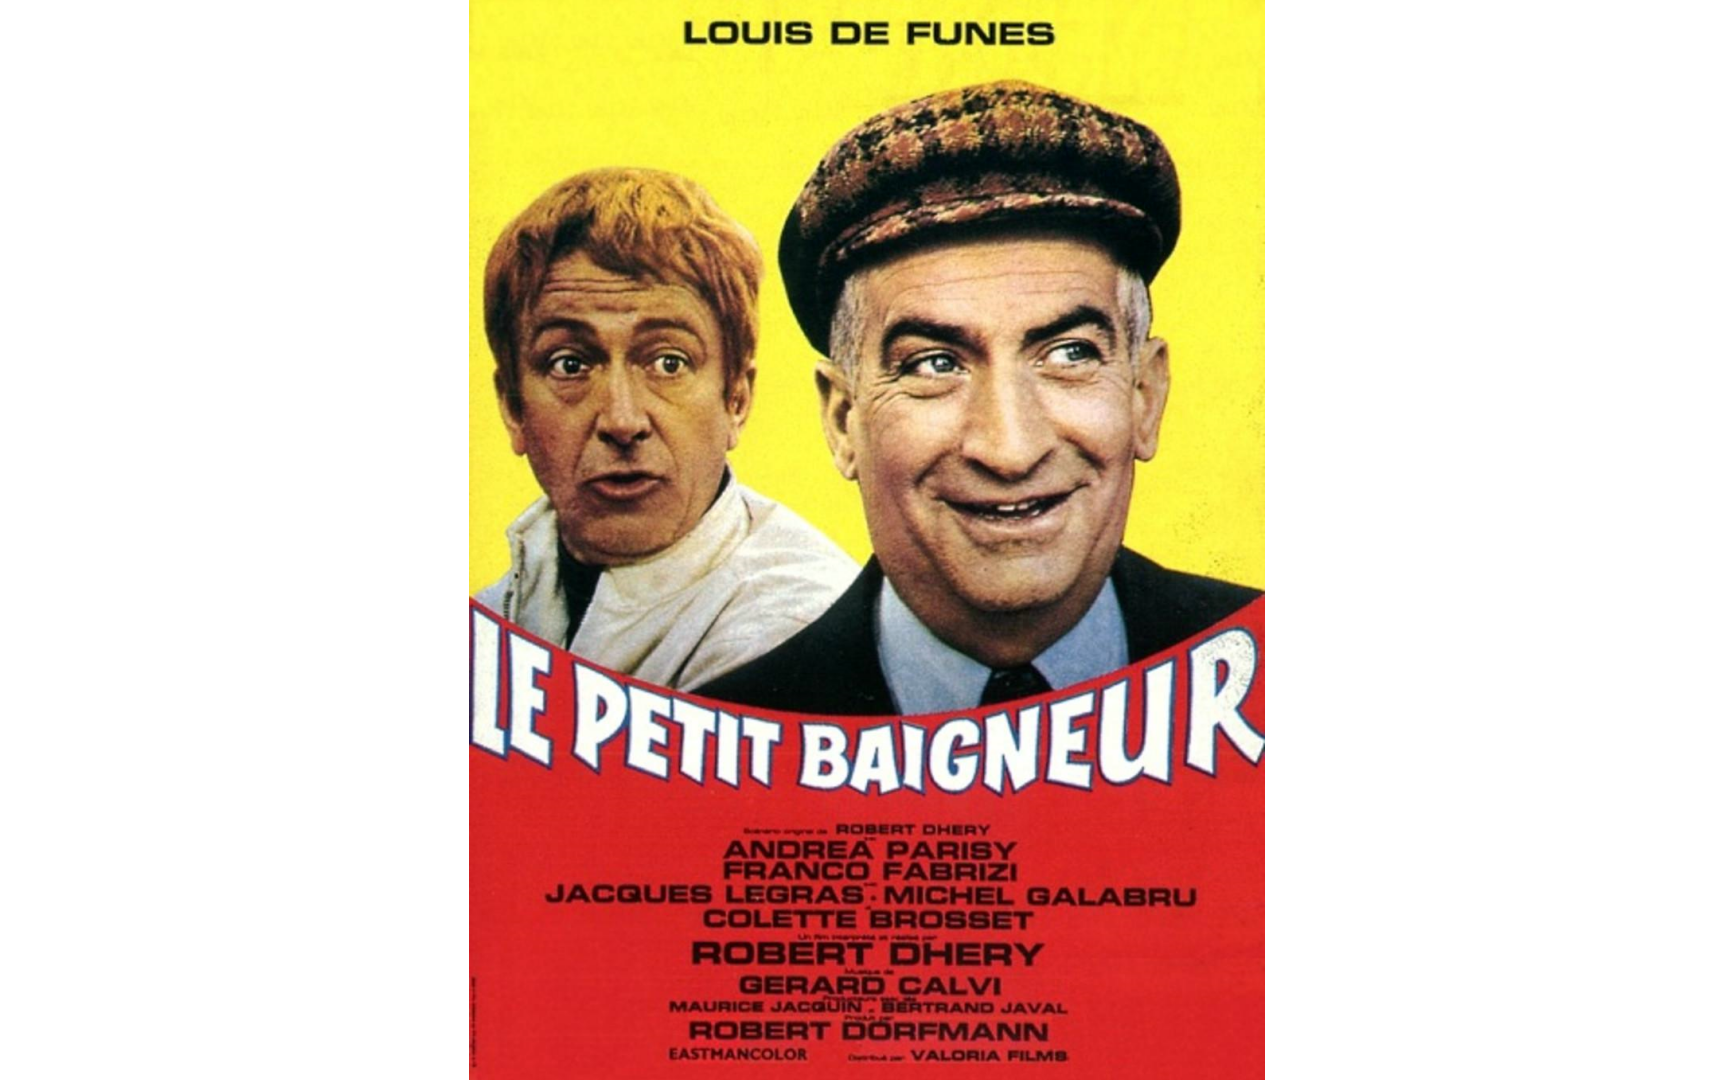 【法国喜剧之王路易·德·菲奈斯作品】《小泳者1968》